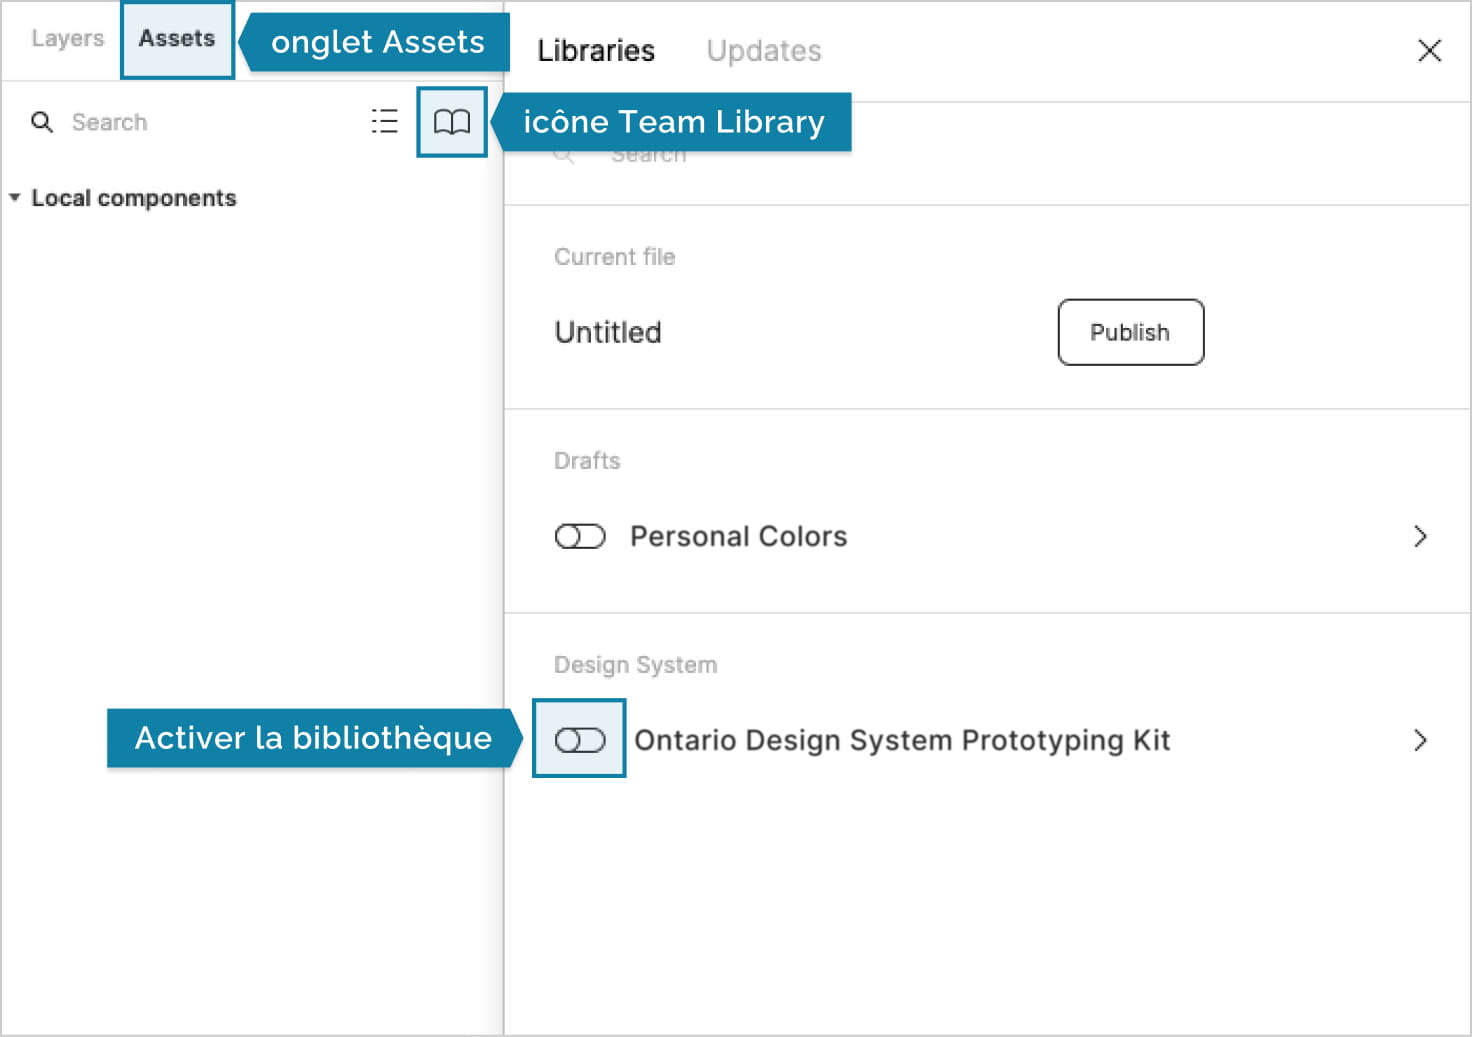 Saisie d'écran de Figma montrant les emplacements de l'onglet Assets, l'icône Team Library, et la bibliothèque Ontario Design System Prototyping Kit.